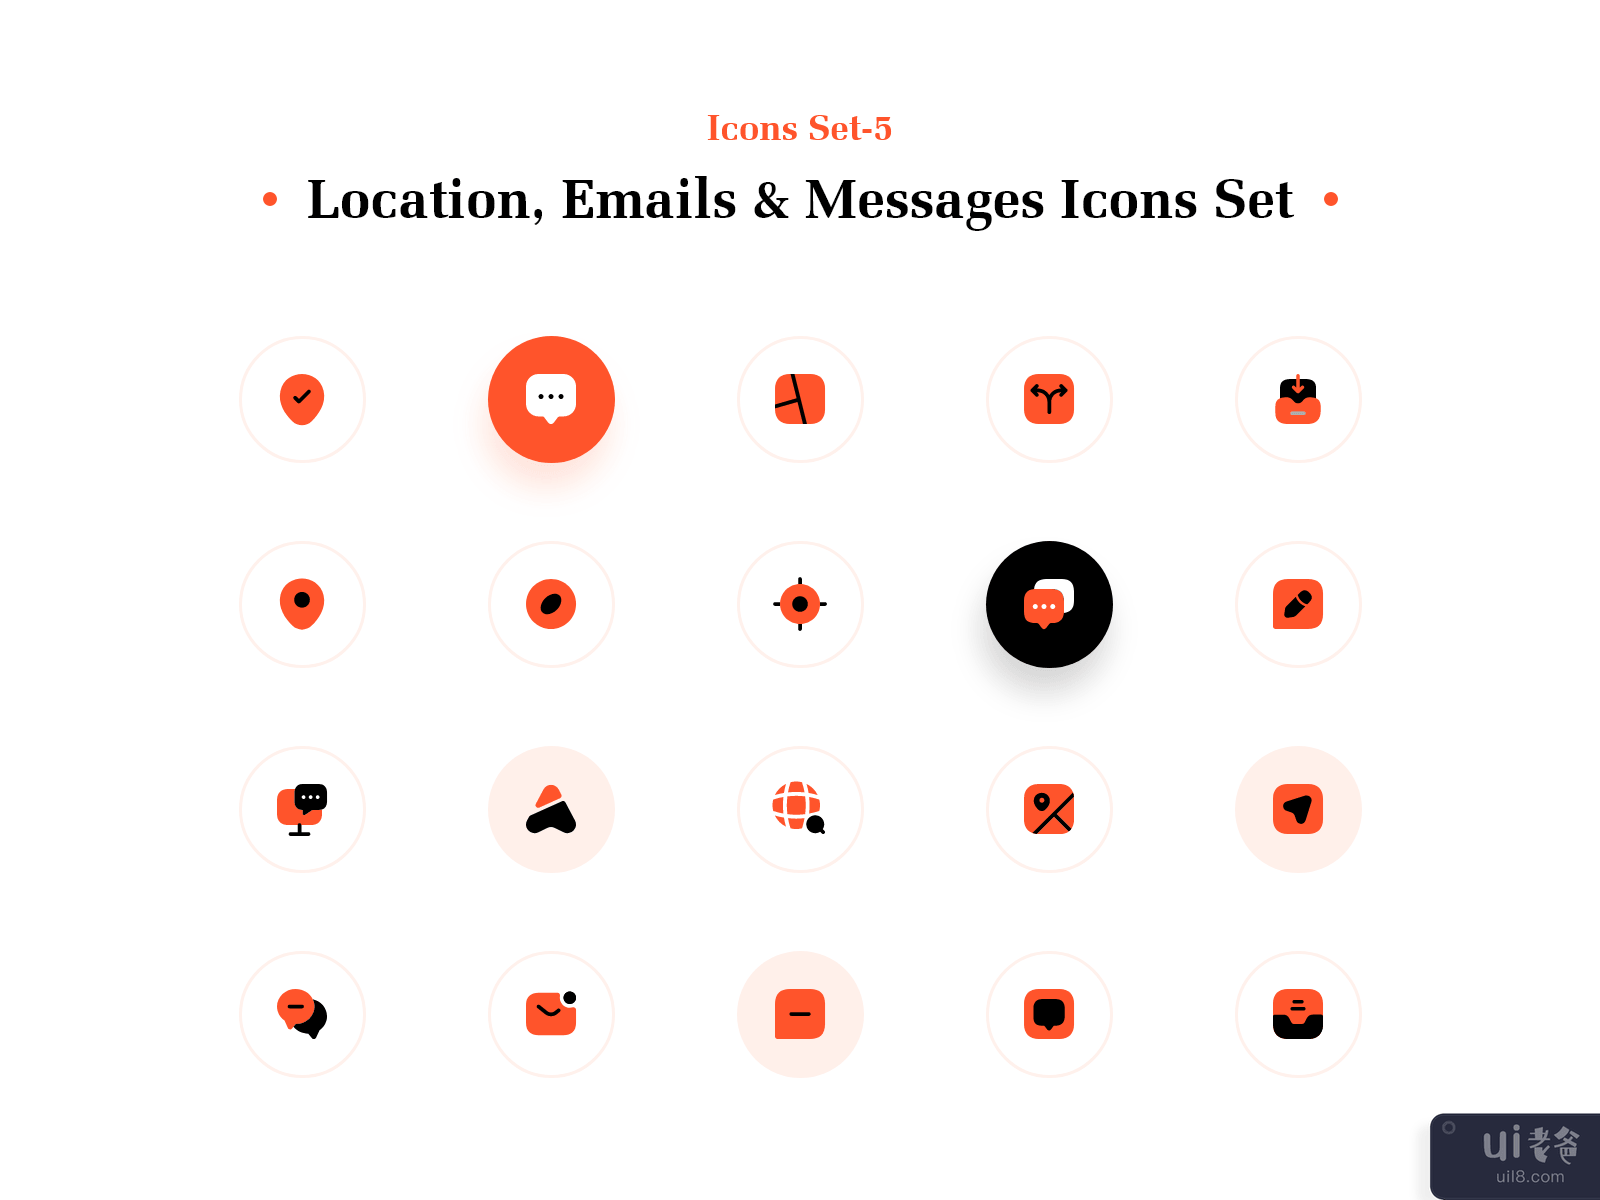 位置、电子邮件和消息图标集(Location, Emails & Messages Icons Set)插图